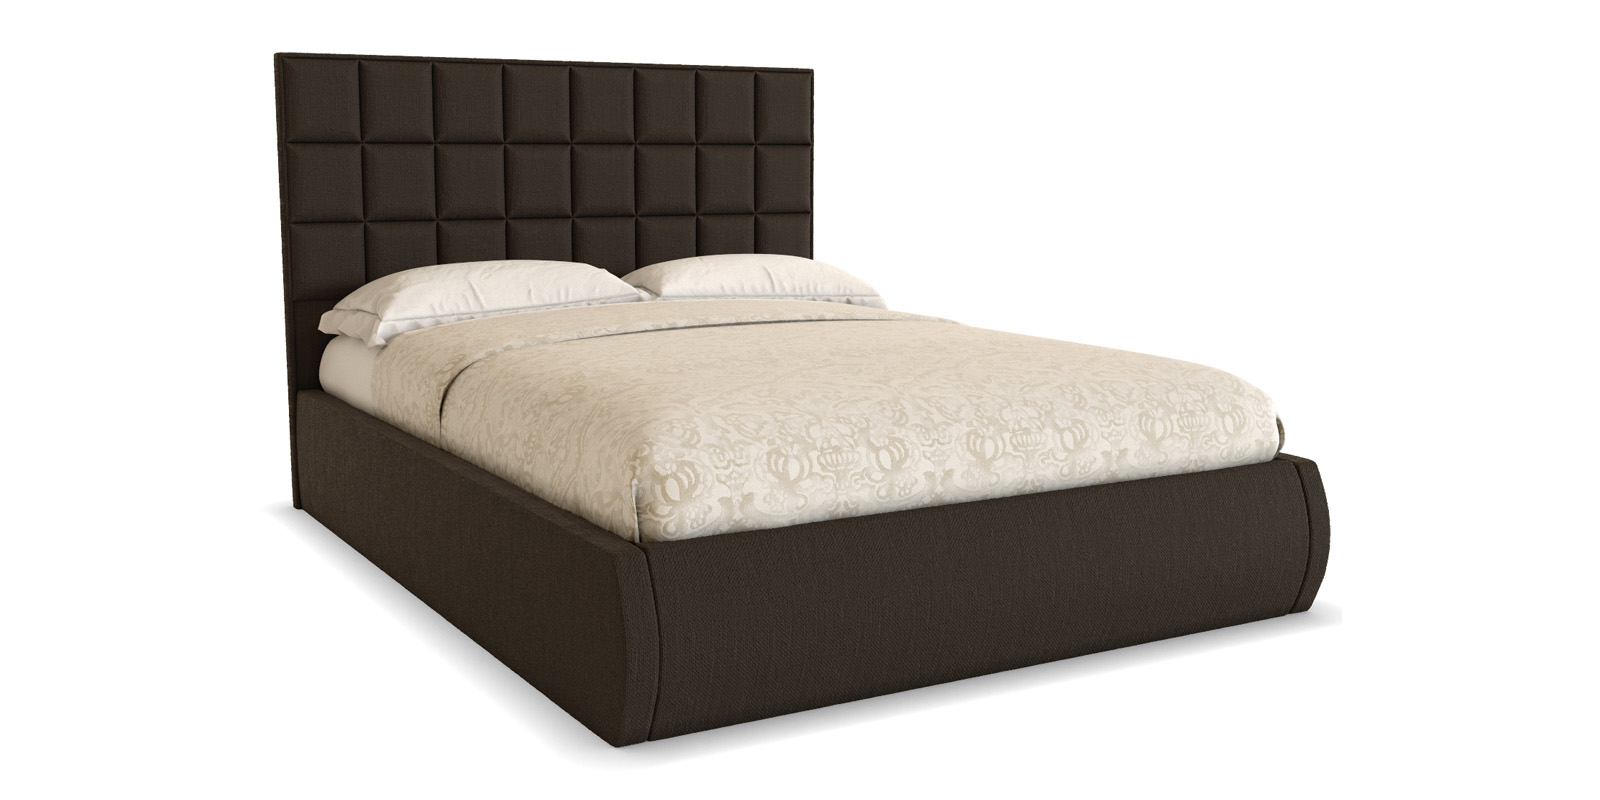   HomeMe Мягкая кровать 200х160 Квадро с подъемным механизмом (темно-коричневый)